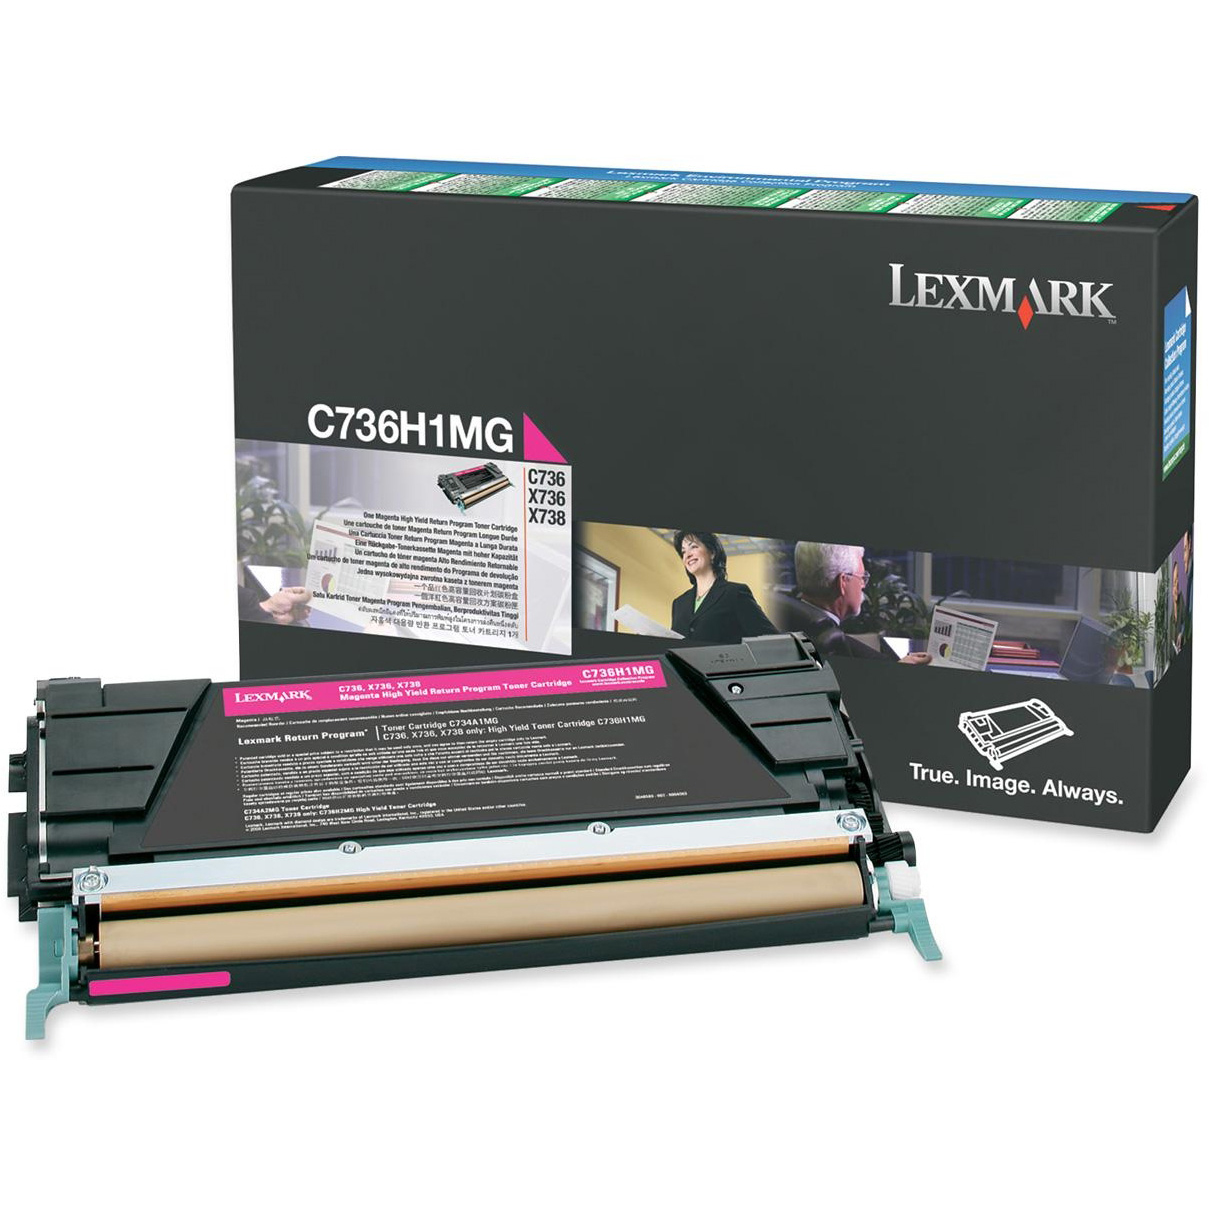 Original Lexmark C736H1MG Magenta High Capacity Toner Cartridge (C736H1MG)